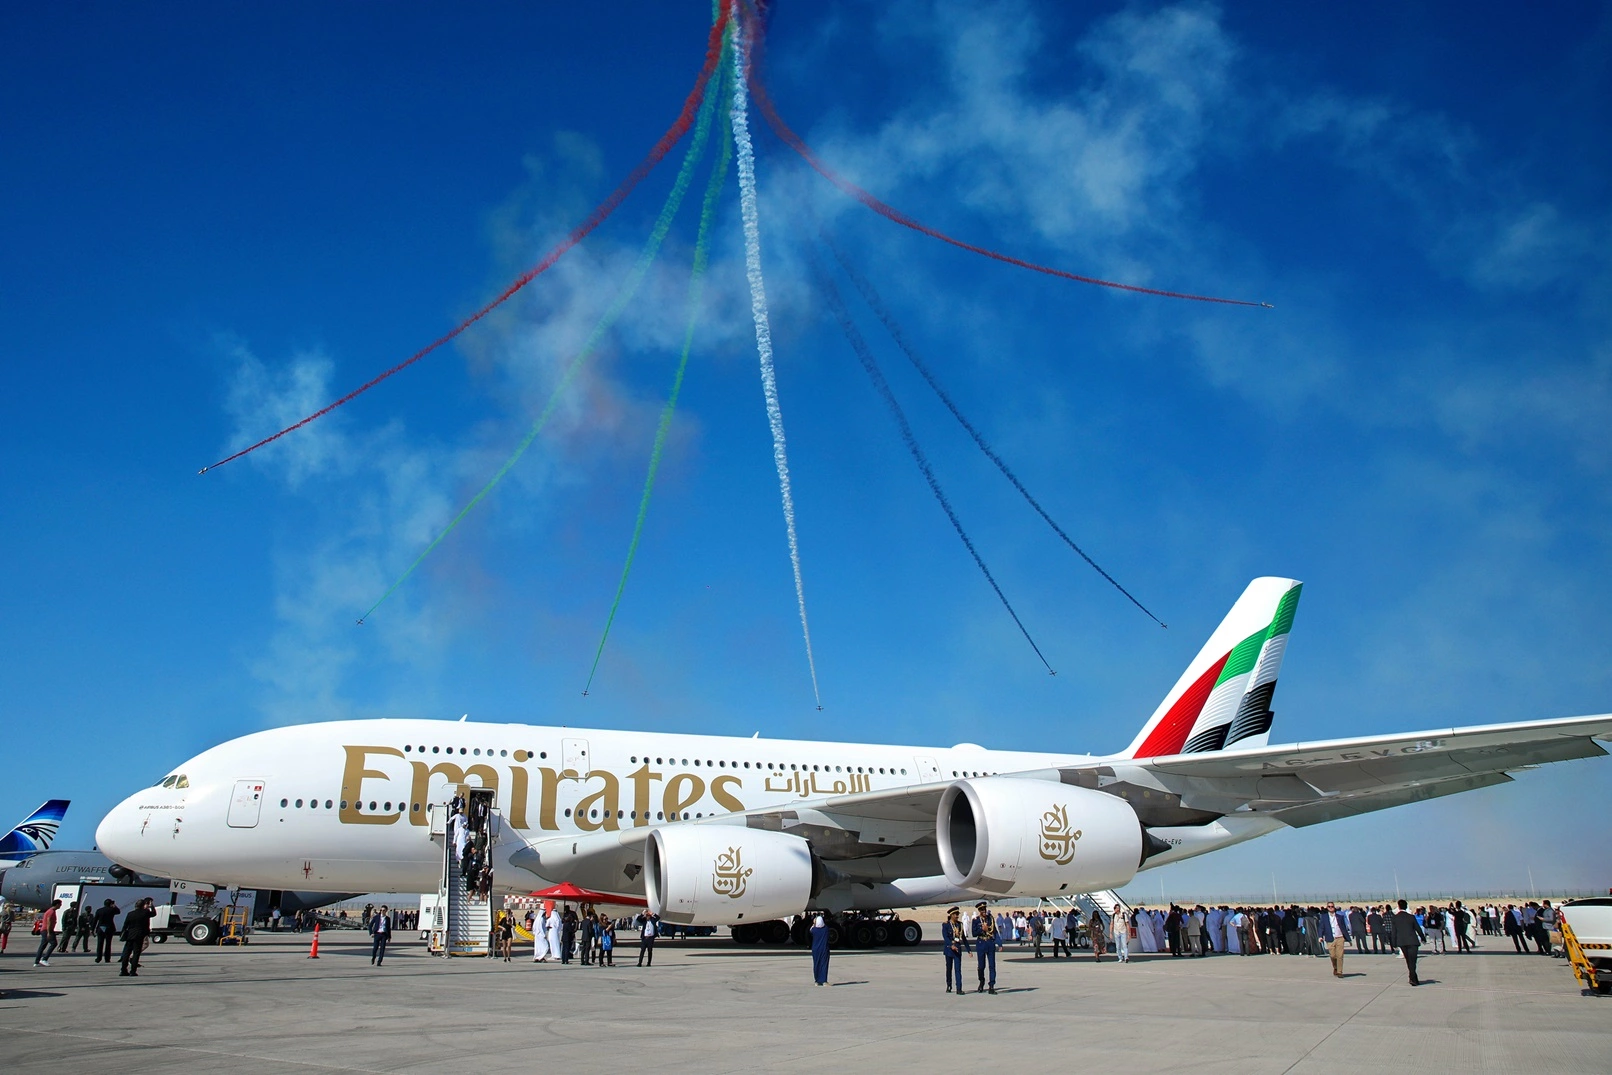 Az Emirates 61 milliárd dollárt meghaladó értékben jelentett be repülőgép-vásárlást és fejlesztést az idei Dubai Airshow-n